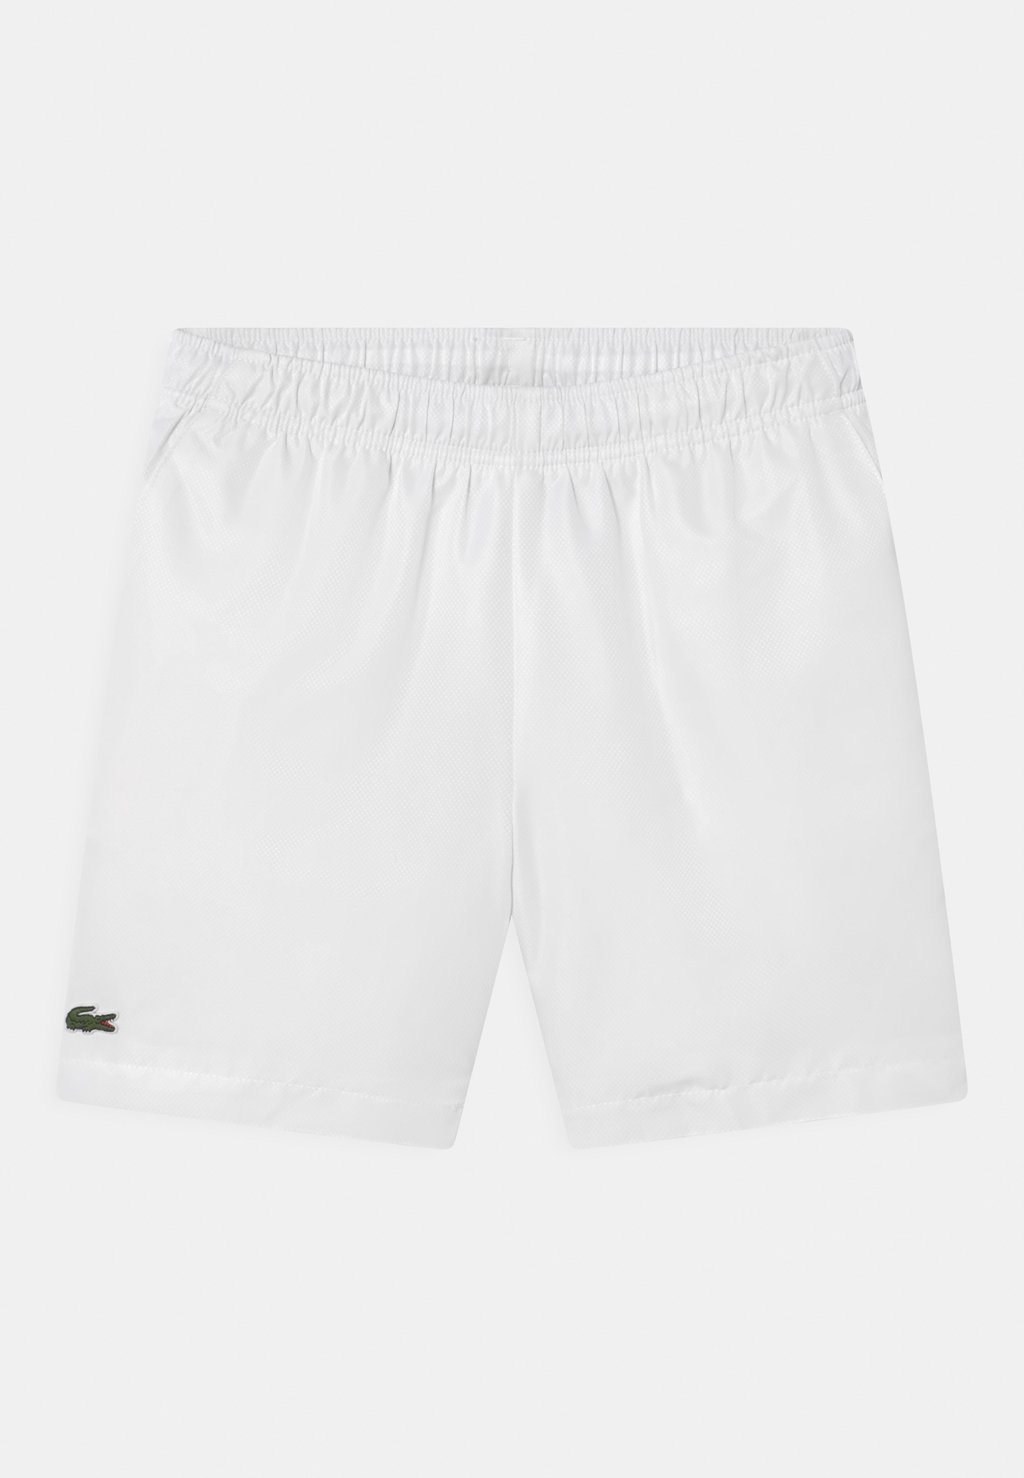 Спортивные шорты Sports Shorts Lacoste, белый спортивные шорты tennis shorts heritage lacoste белый